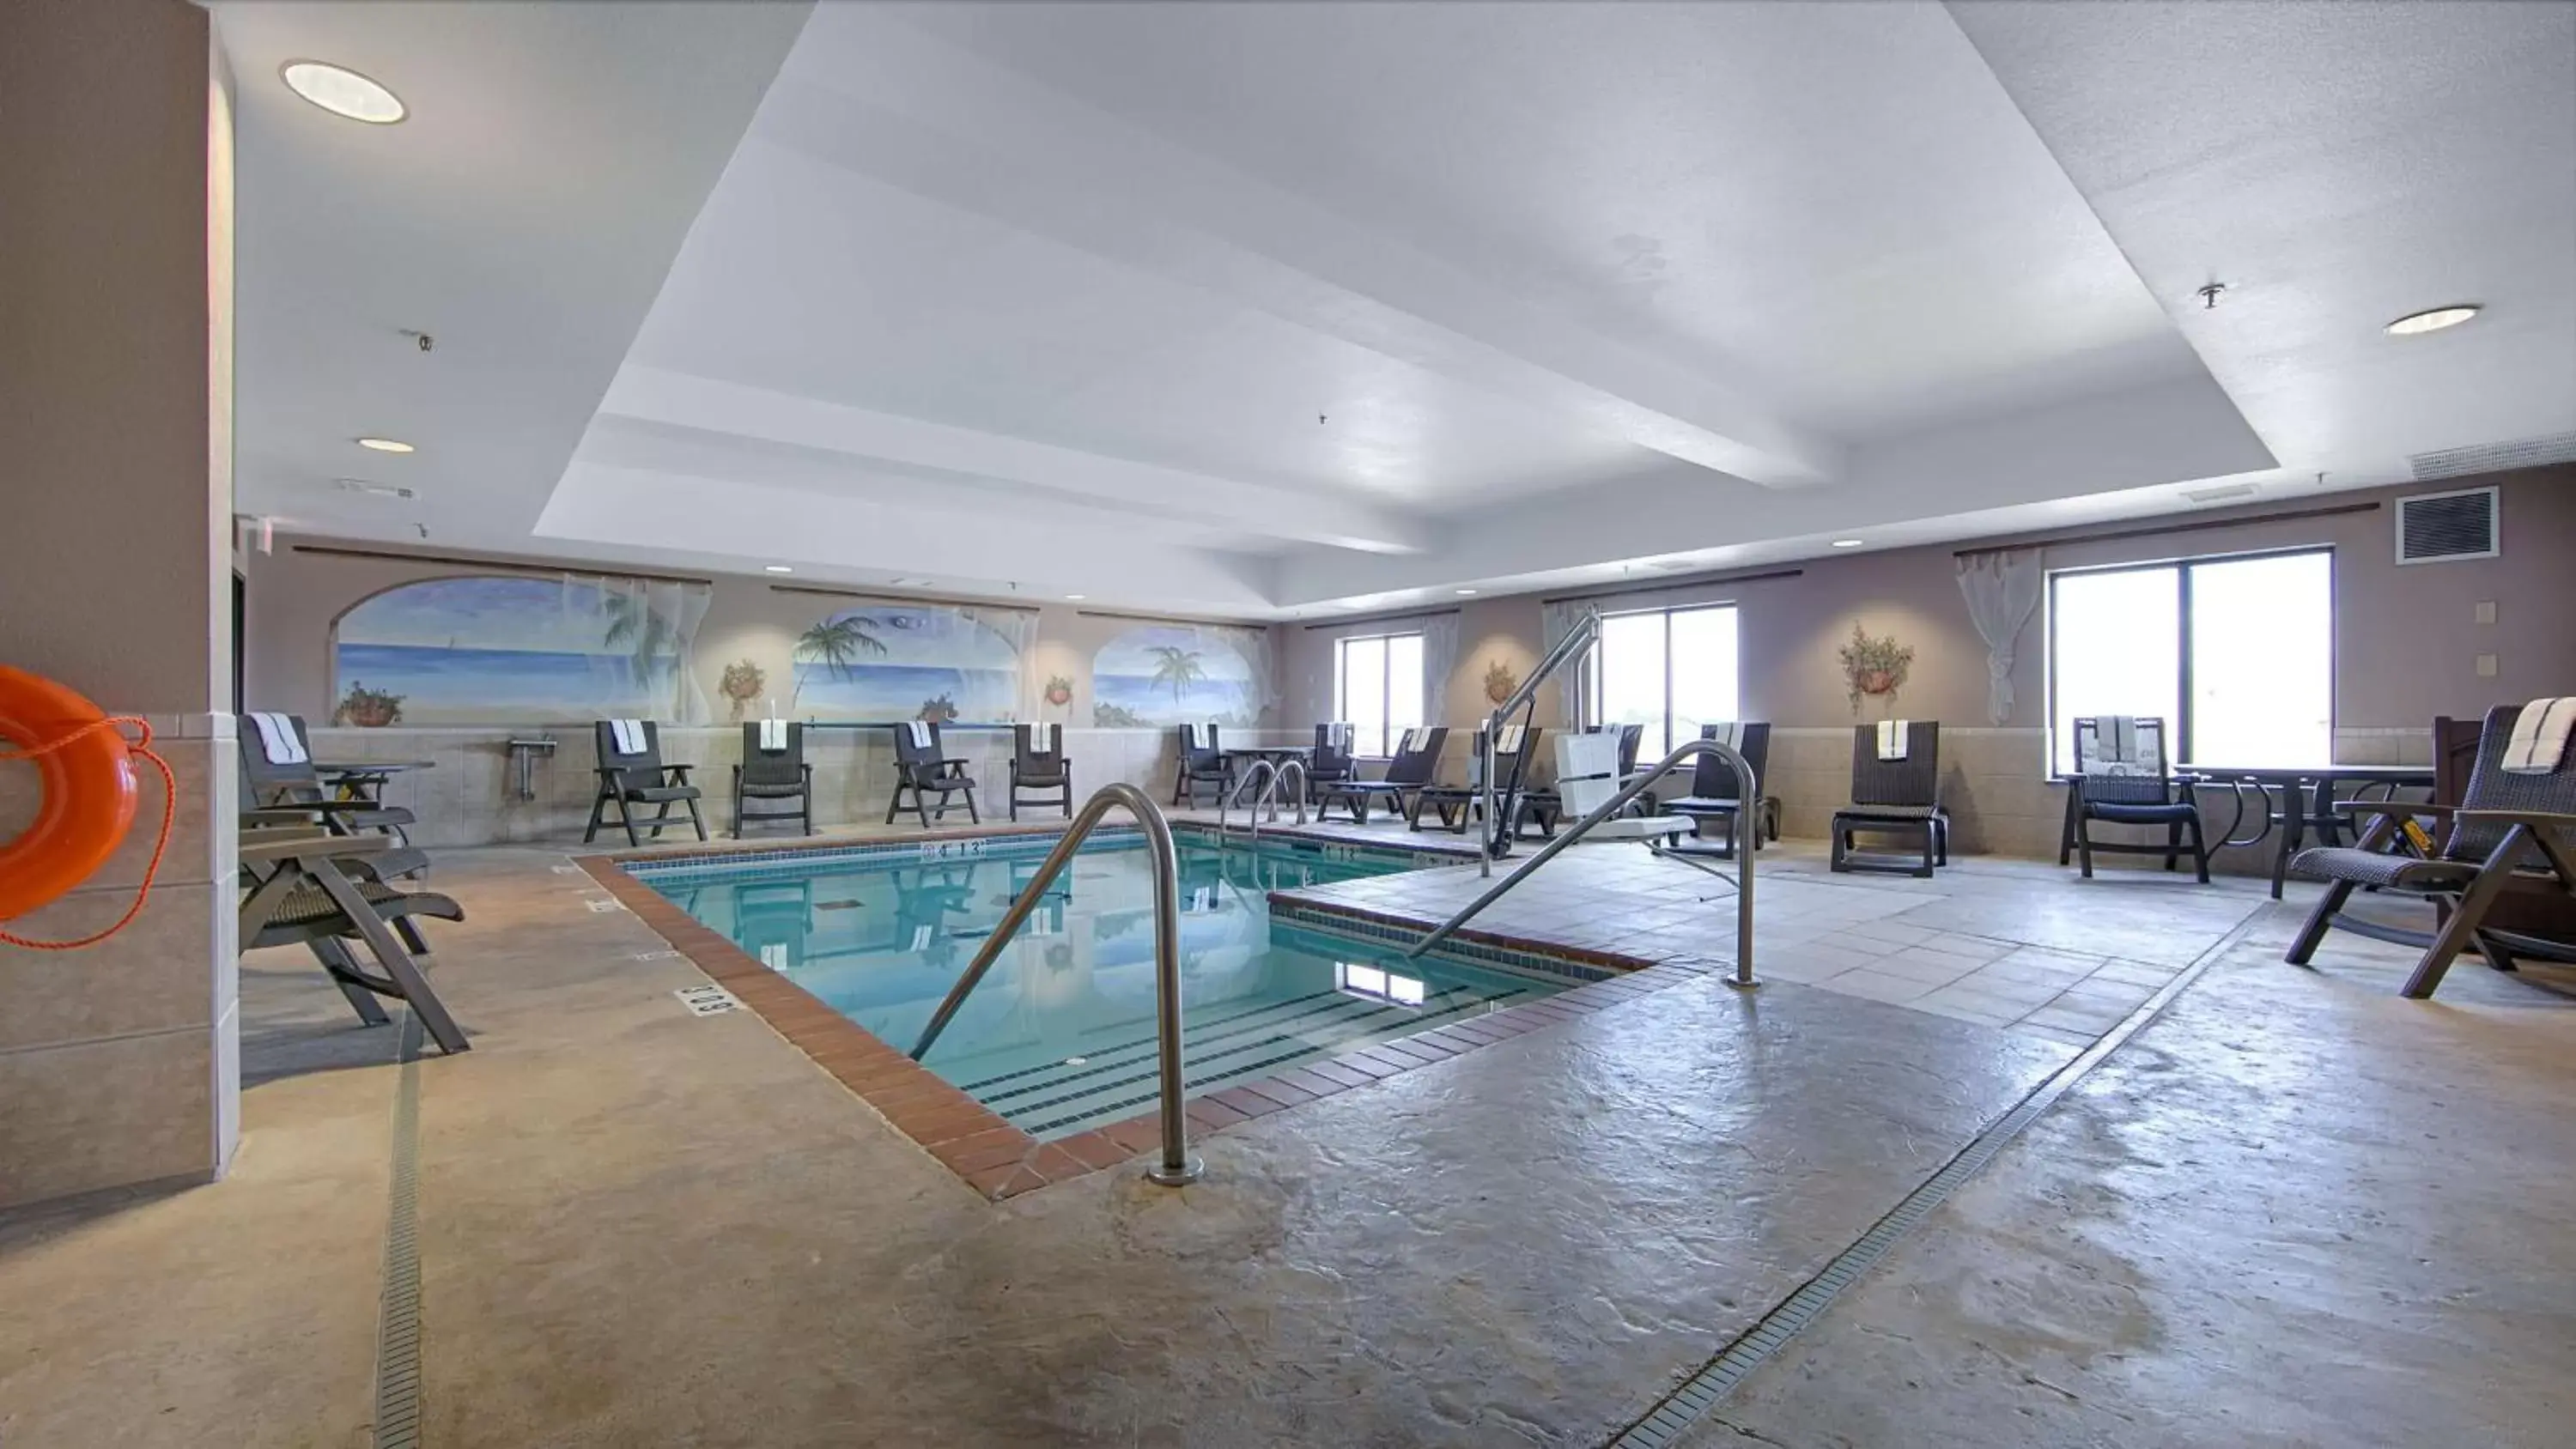 On site, Swimming Pool in Best Western Plus Memorial Inn & Suites